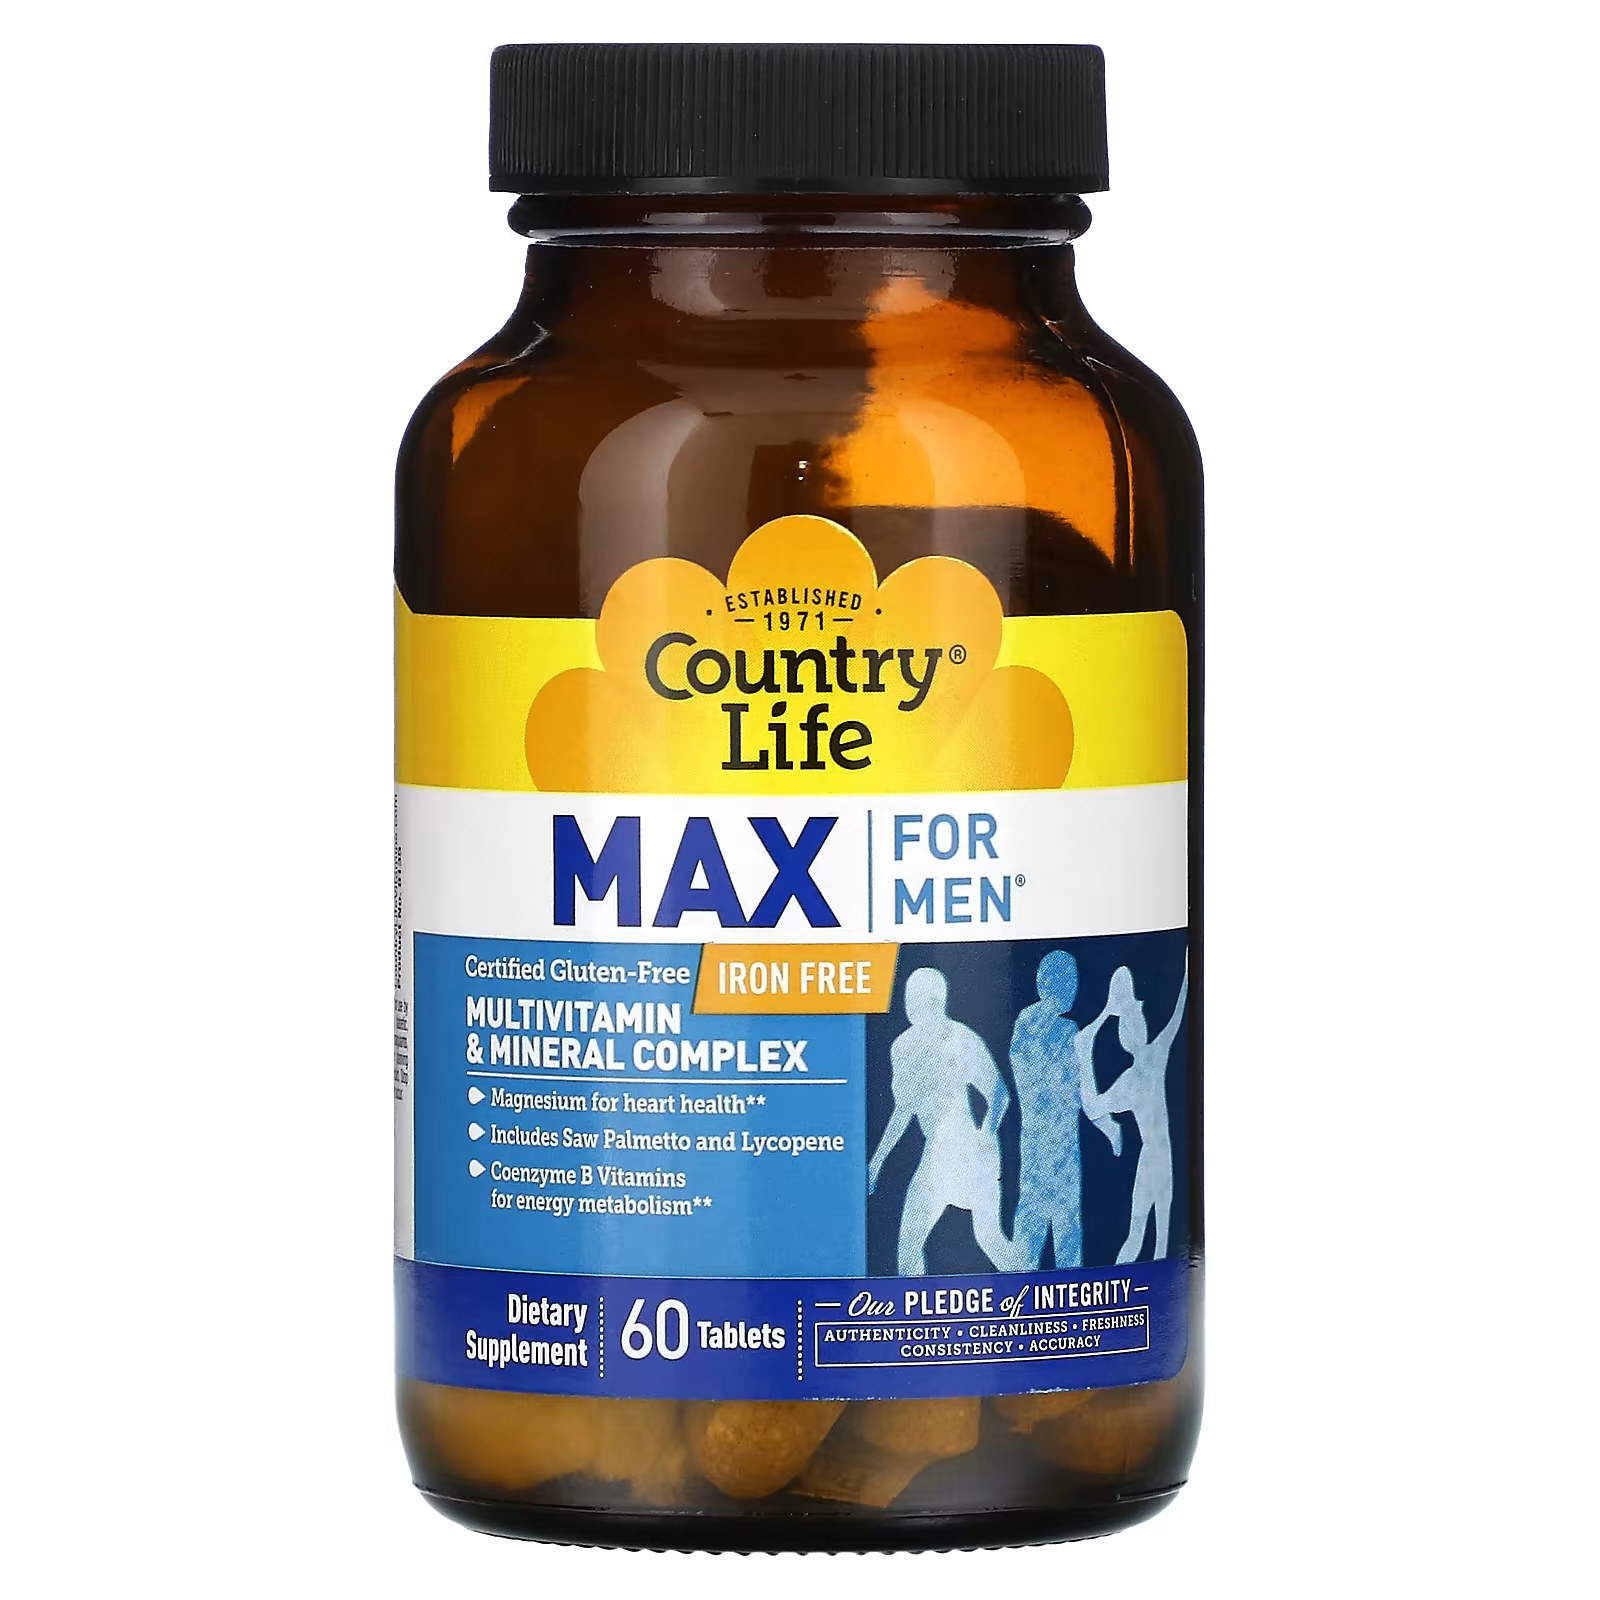 Мультивитаминный и минеральный комплекс Country Life Max для мужчин, 60 таблеток country life max for men мультивитаминный и минеральный комплекс без железа 60 таблеток